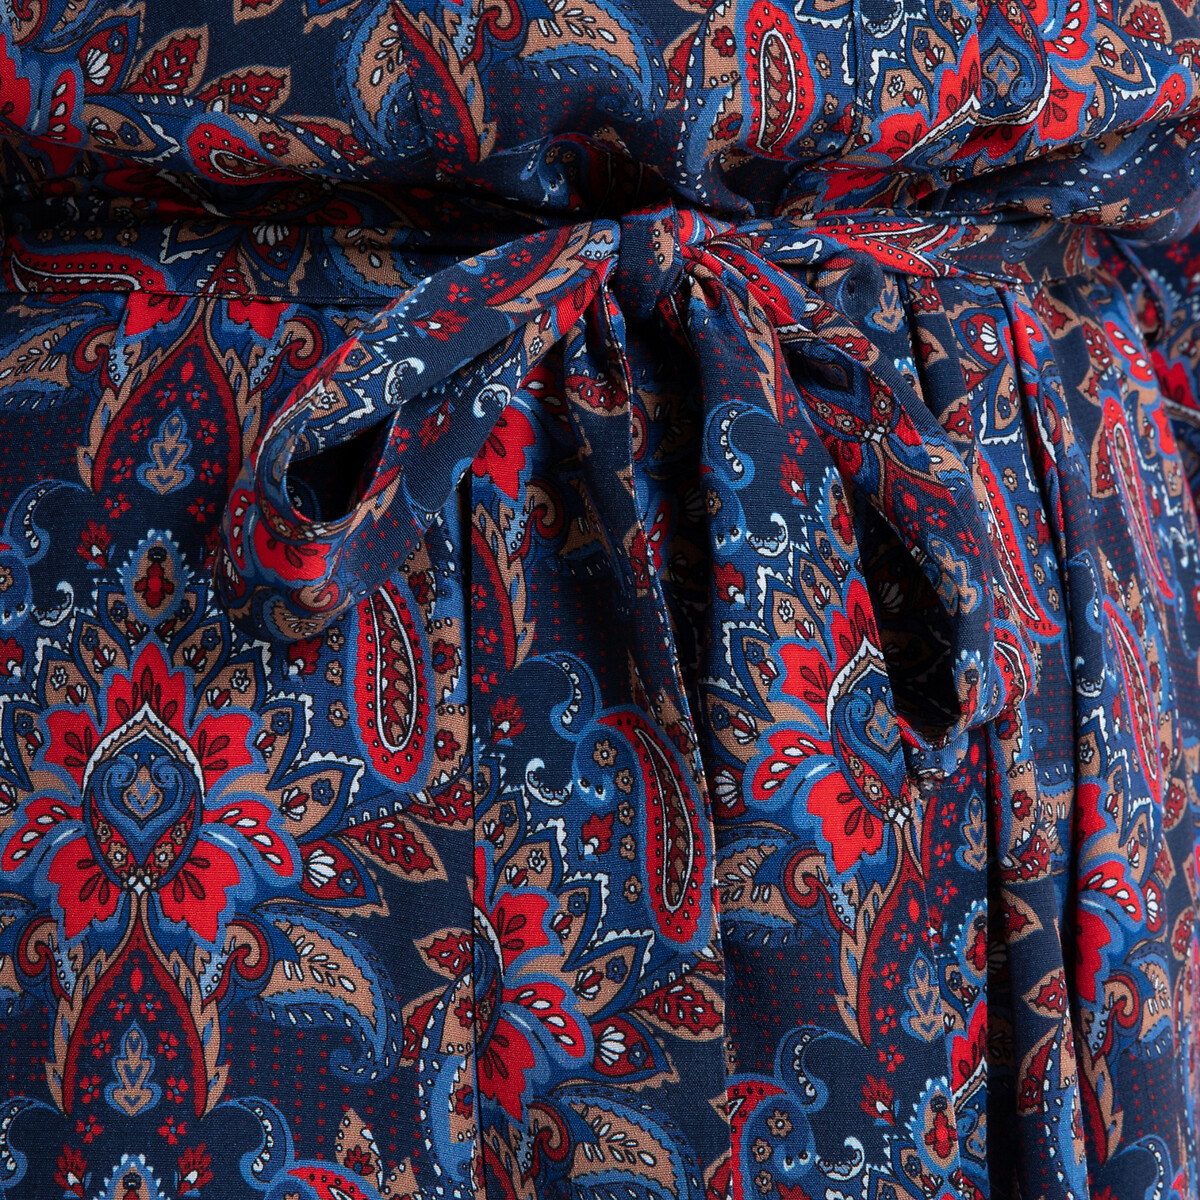 Платье La Redoute Расклешенное с кашемировым принтом длинное ODILE 40 (FR) - 46 (RUS) красный, размер 40 (FR) - 46 (RUS) Расклешенное с кашемировым принтом длинное ODILE 40 (FR) - 46 (RUS) красный - фото 4